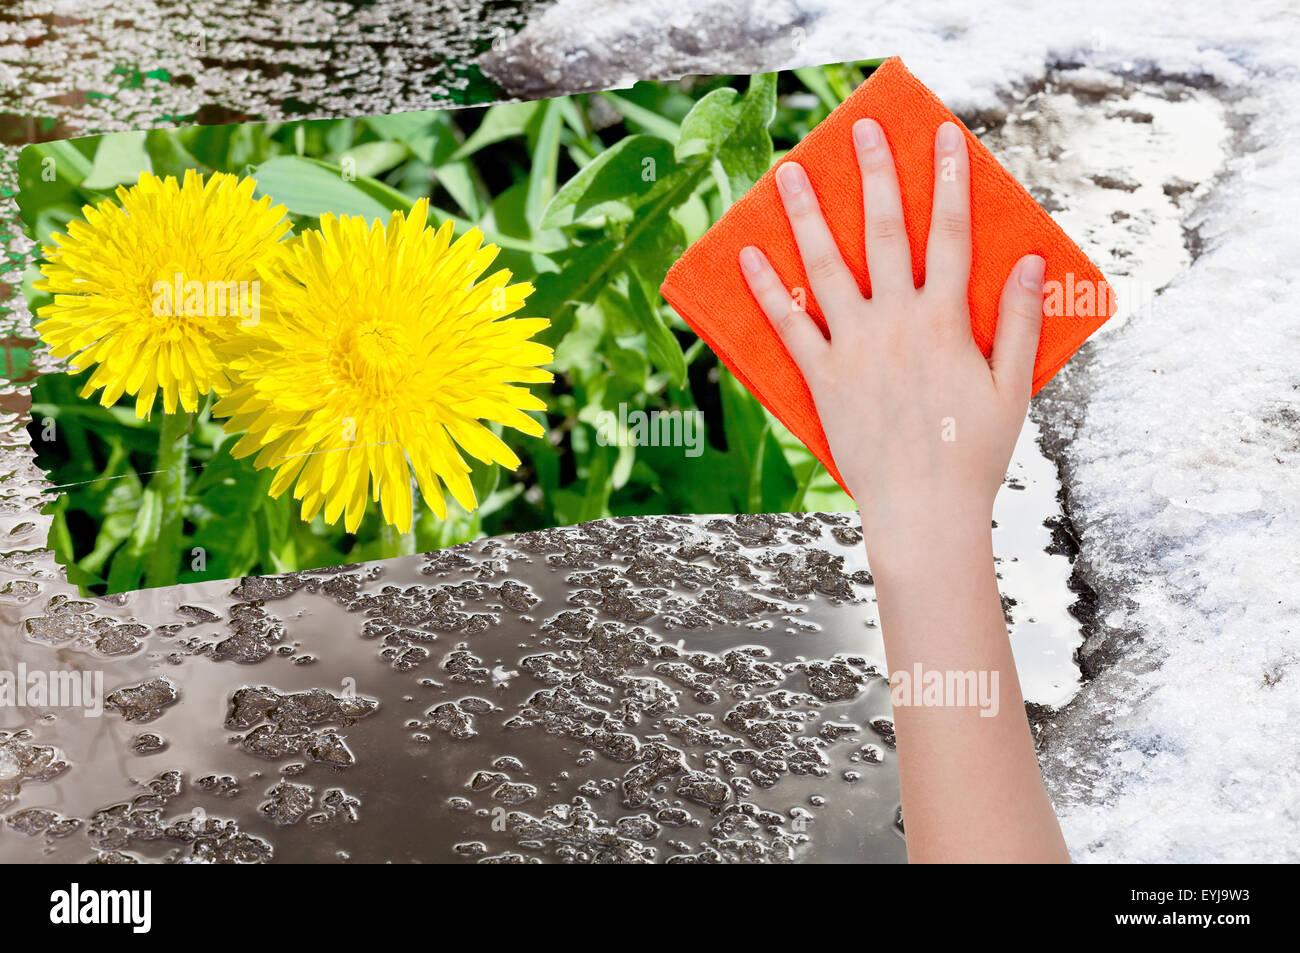 Saison Konzept - Hand löscht Schneeschmelze durch orange Tuch aus Bild- und gelber Löwenzahn, die Blüten erscheinen Stockfoto